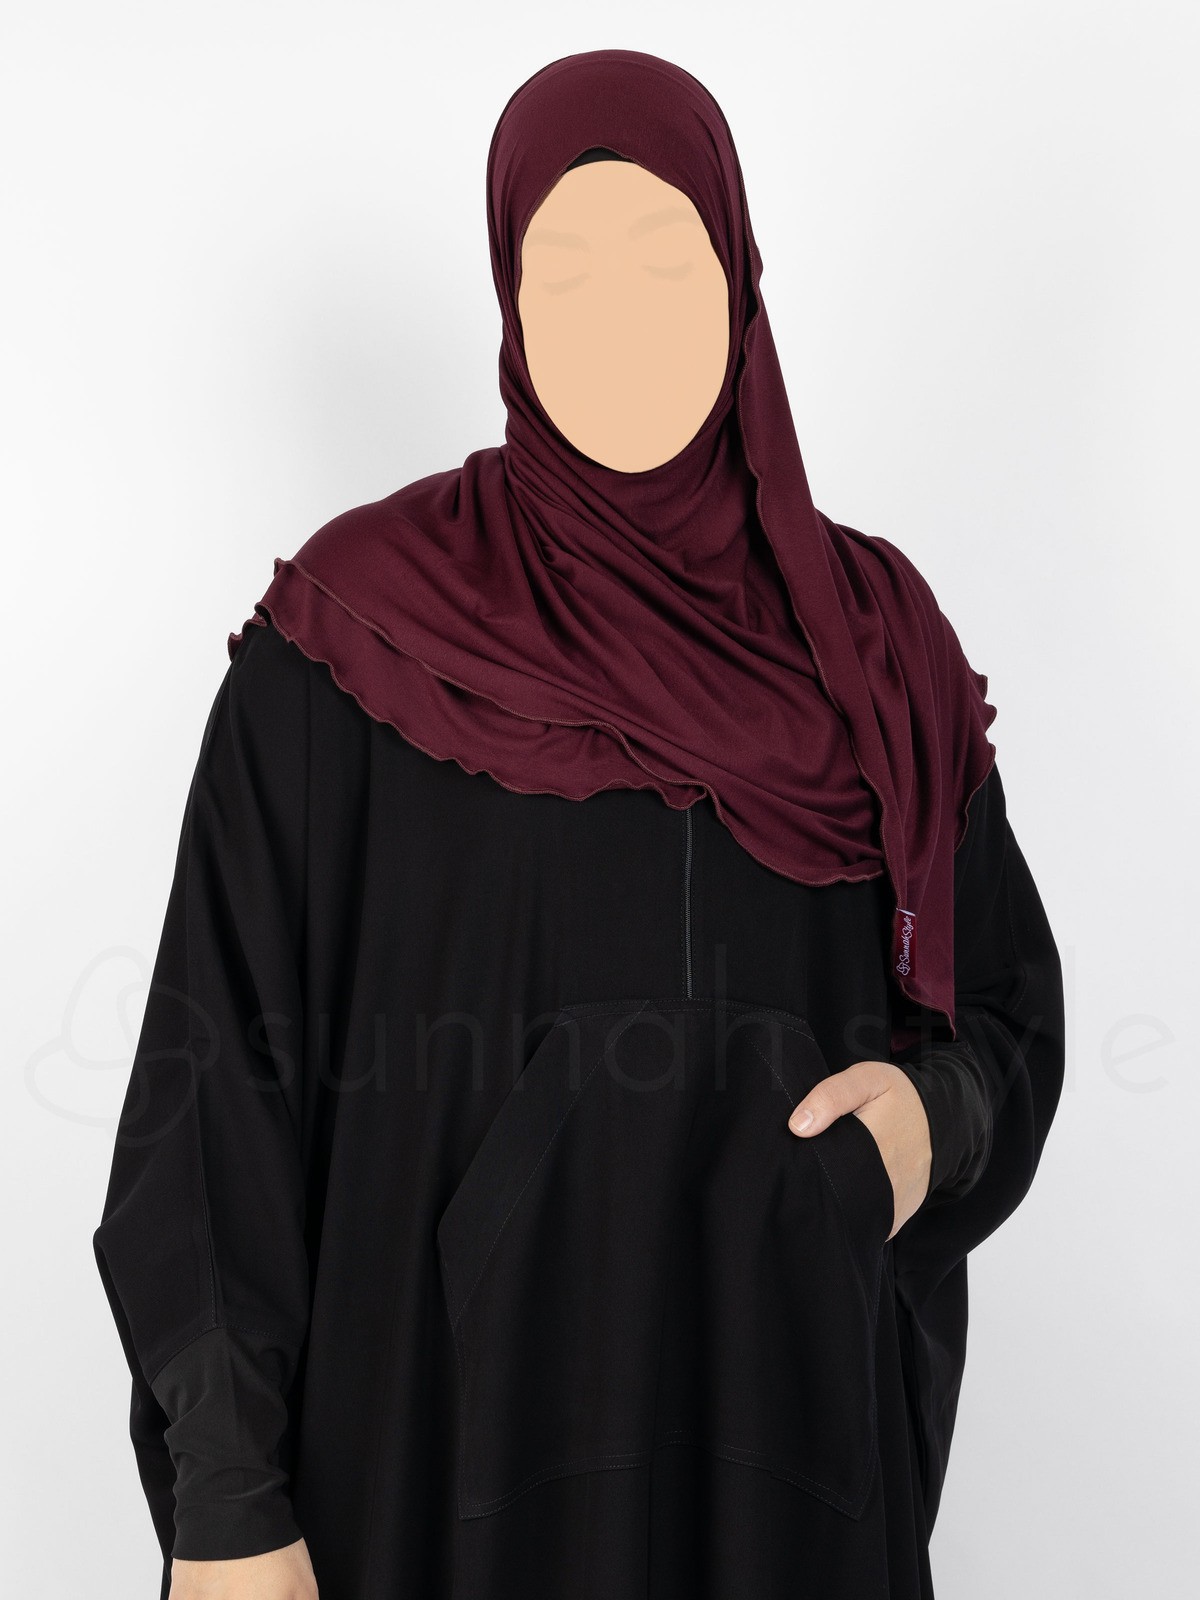 Sunnah Style - Urban Shayla (Soft Jersey) - Standard (Burgundy)